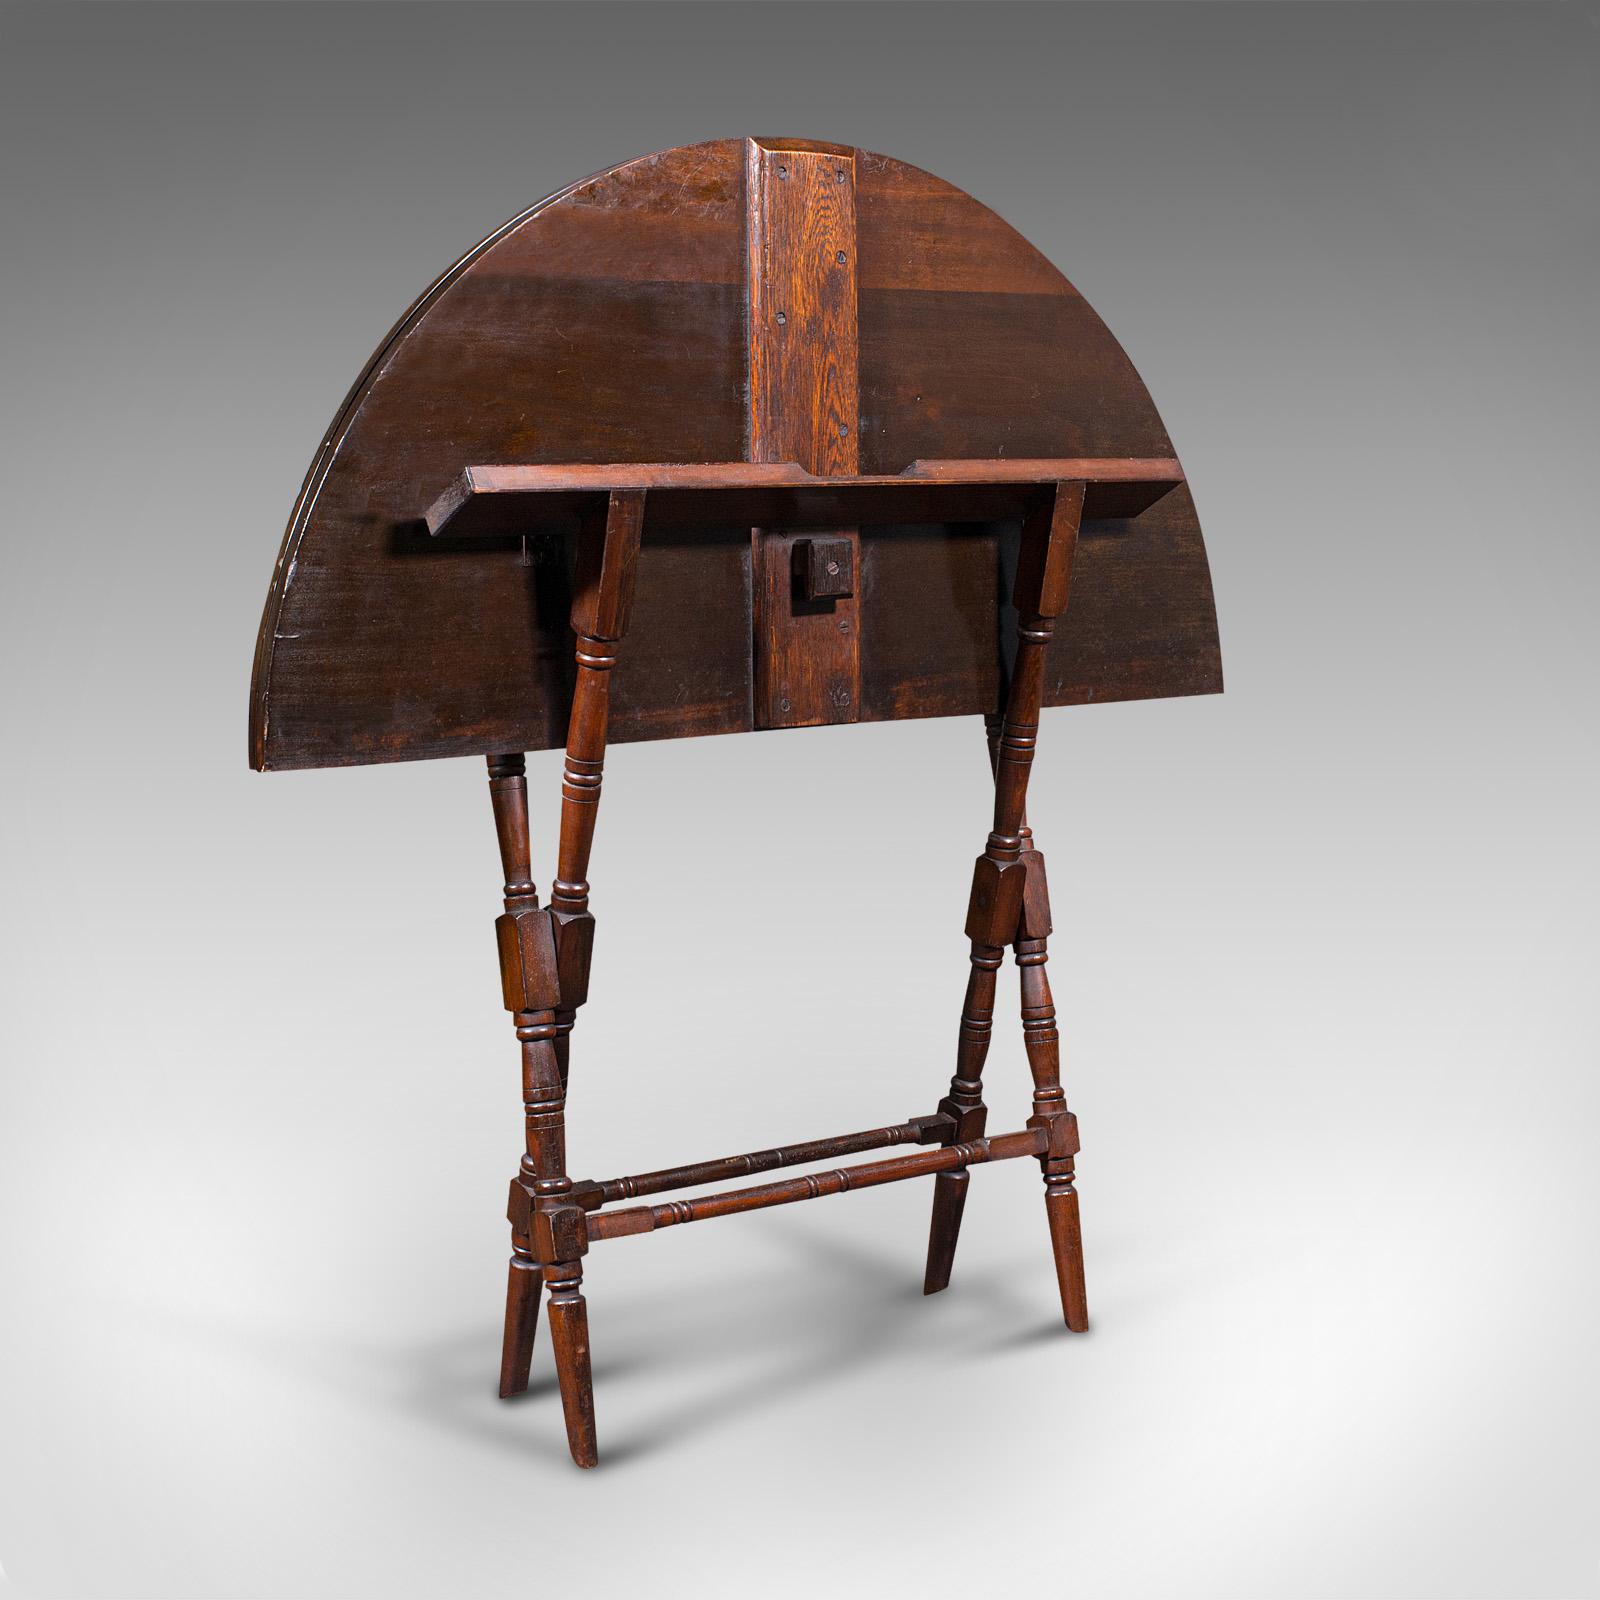 Il s'agit d'une ancienne table d'entraîneur pliante. Table de jeu ou d'extérieur en acajou teinté, datant de la fin de la période victorienne, vers 1890.

Mécanisme de pliage fascinant avec base articulée
Présente une patine vieillie souhaitable